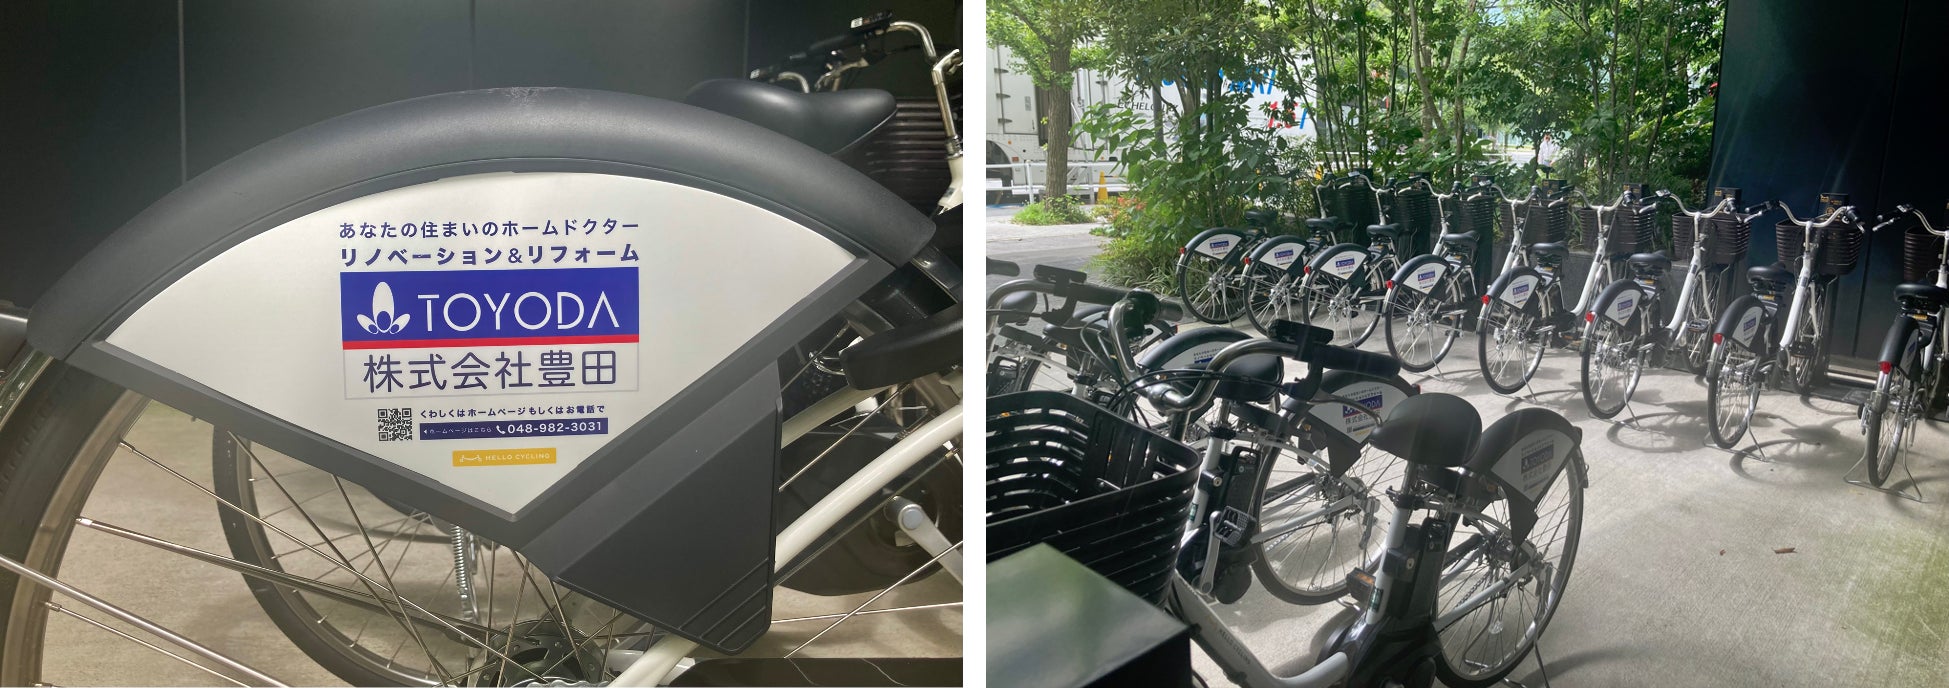 株式会社豊田がシェアサイクルサービス「HELLO CYCLING」へ電動アシスト自転車を導入のサブ画像2